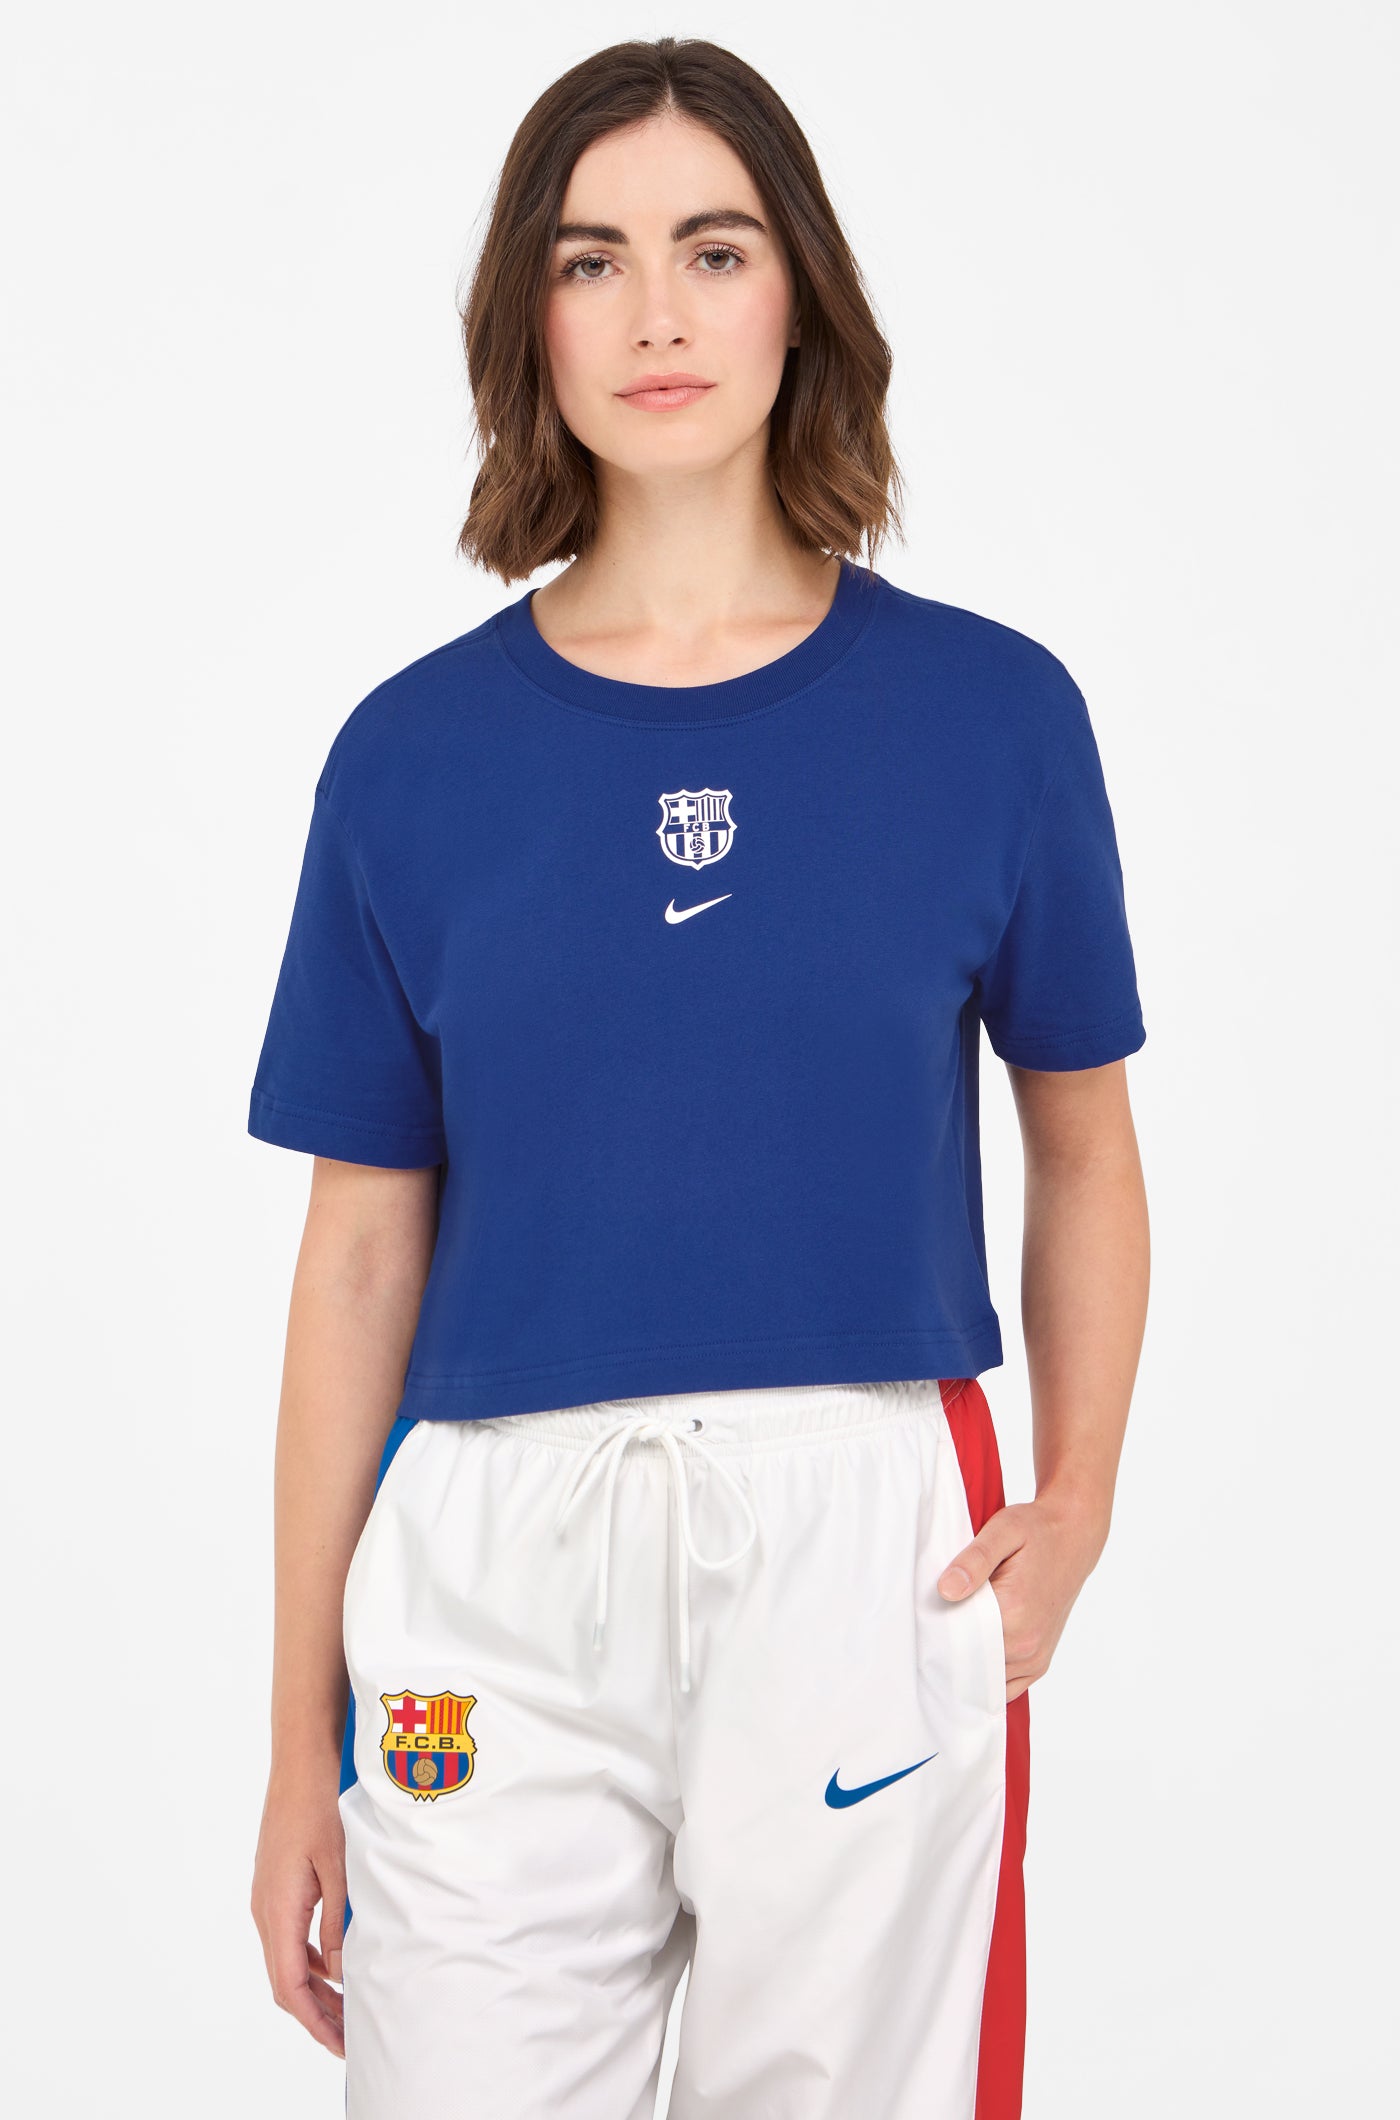 Crop top blava escut Barça Nike - Dona